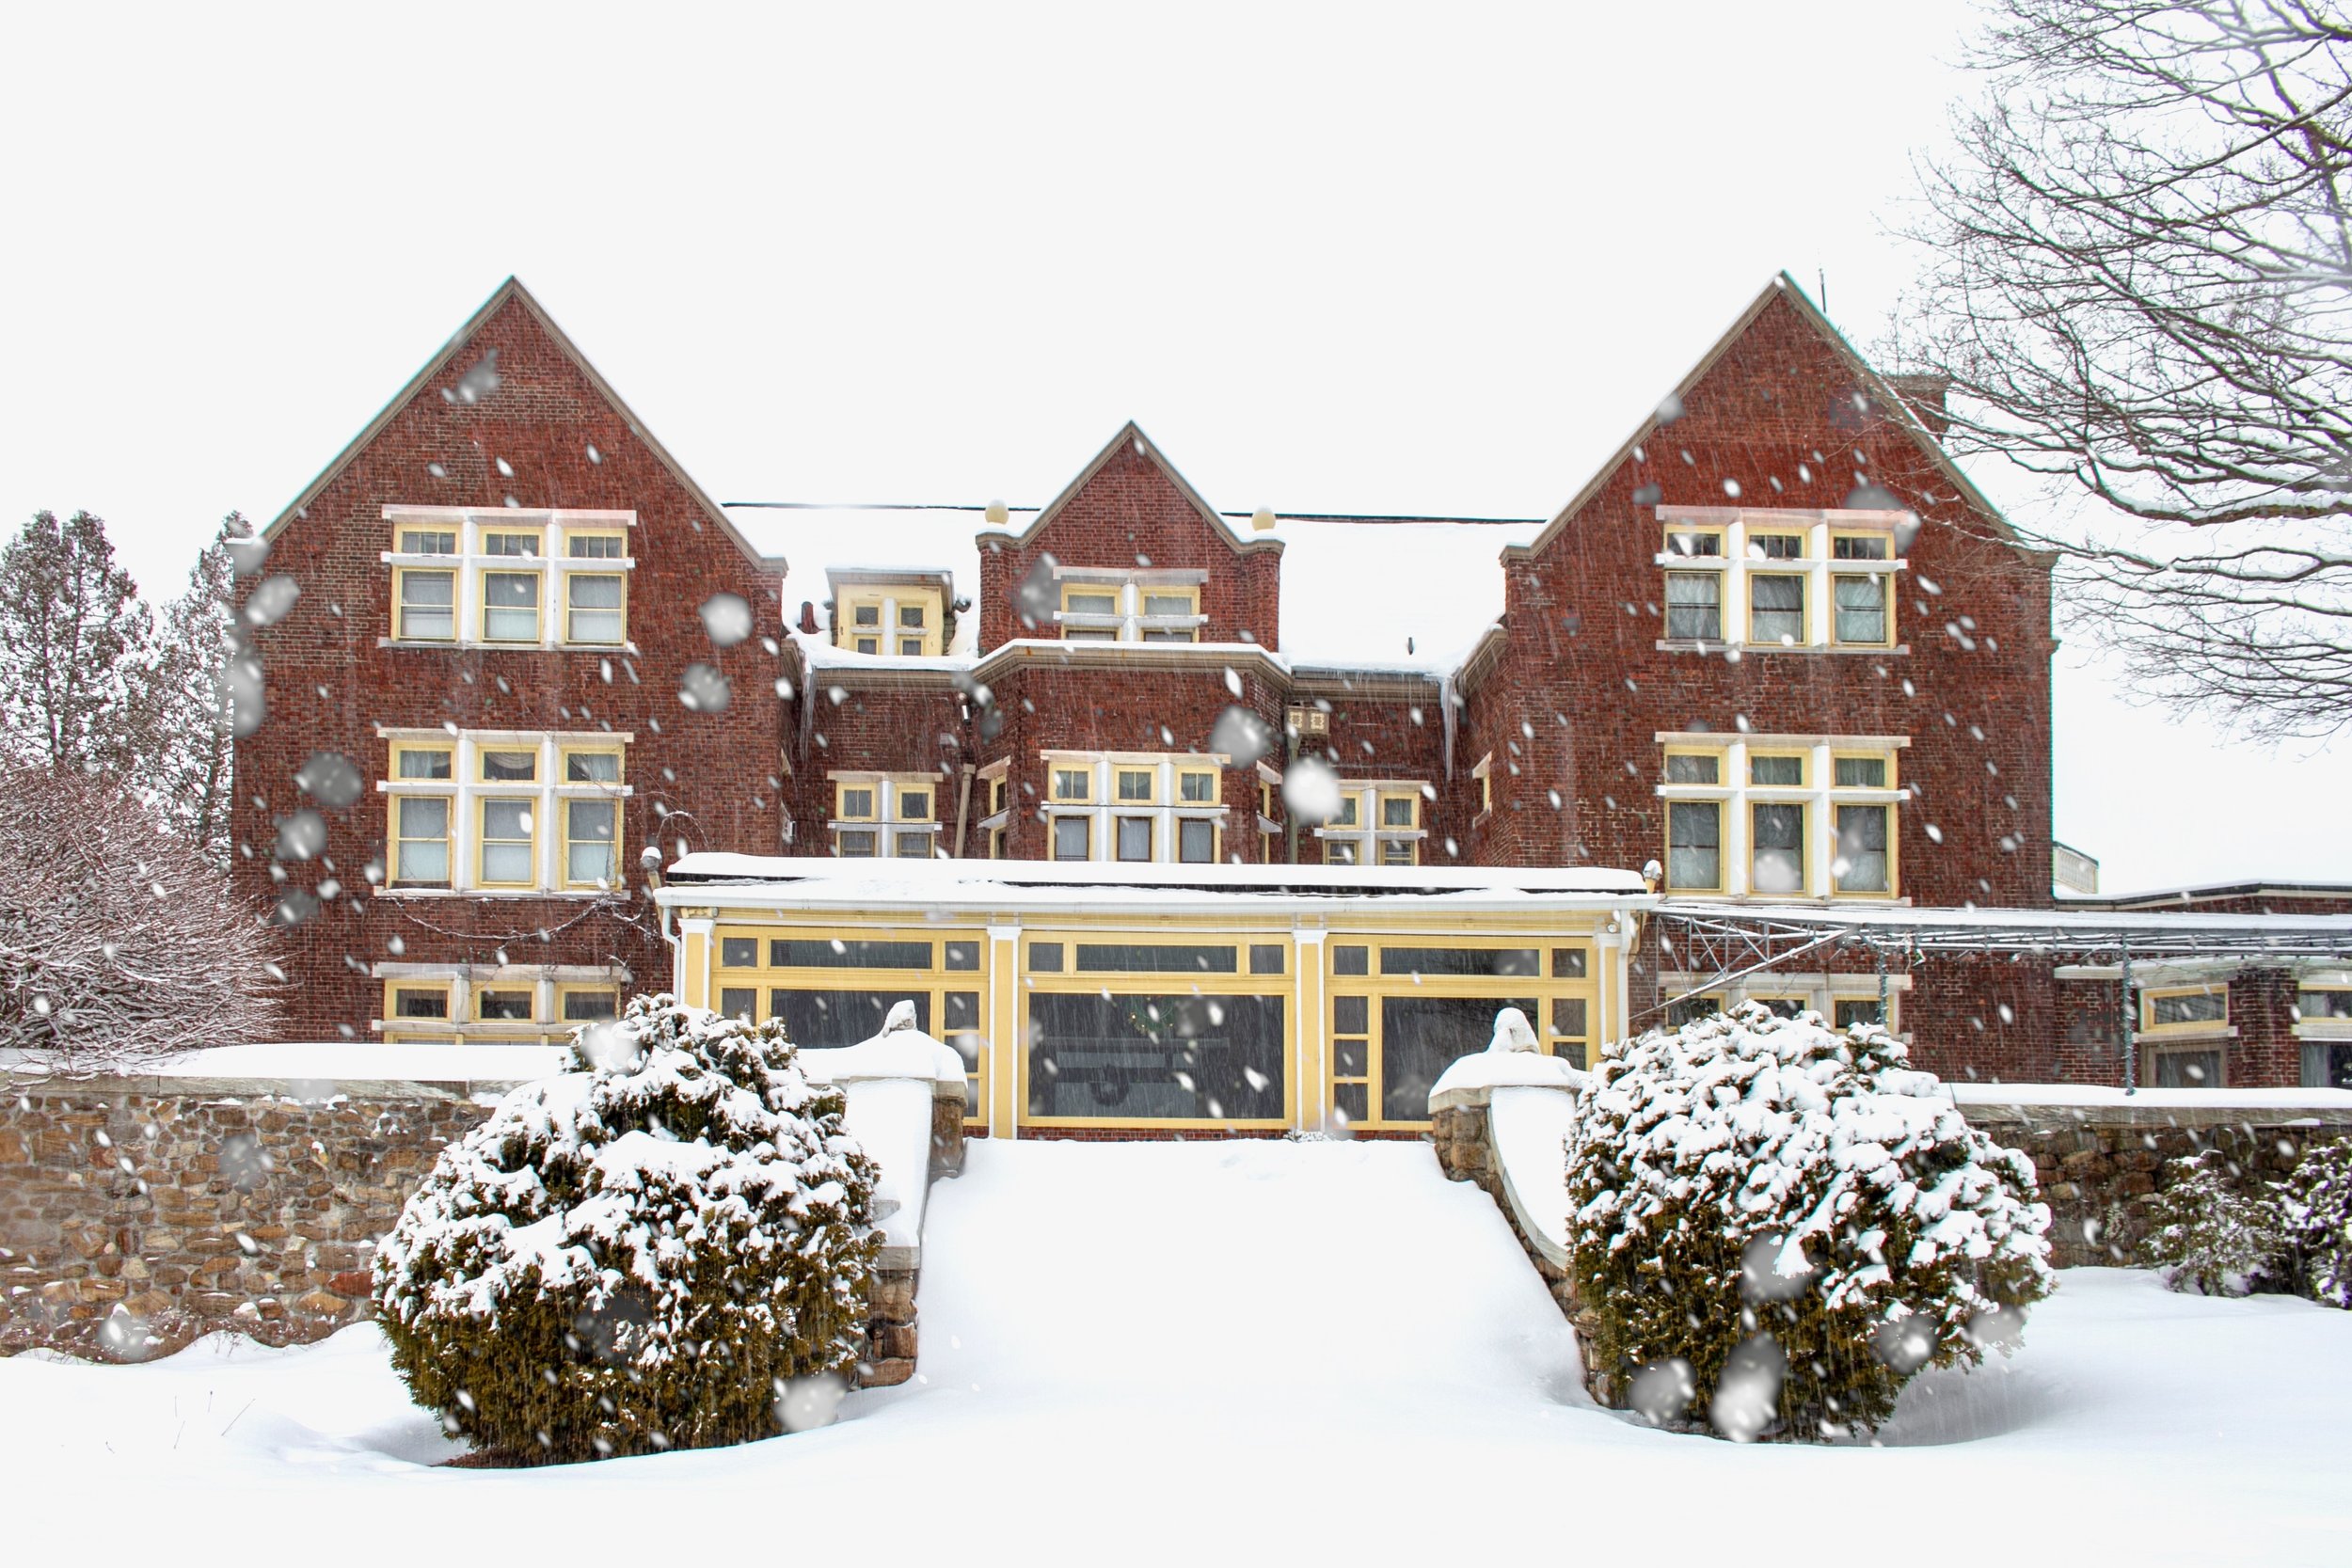 The Snowy Wilburton Mansion Alex Vincent.jpeg